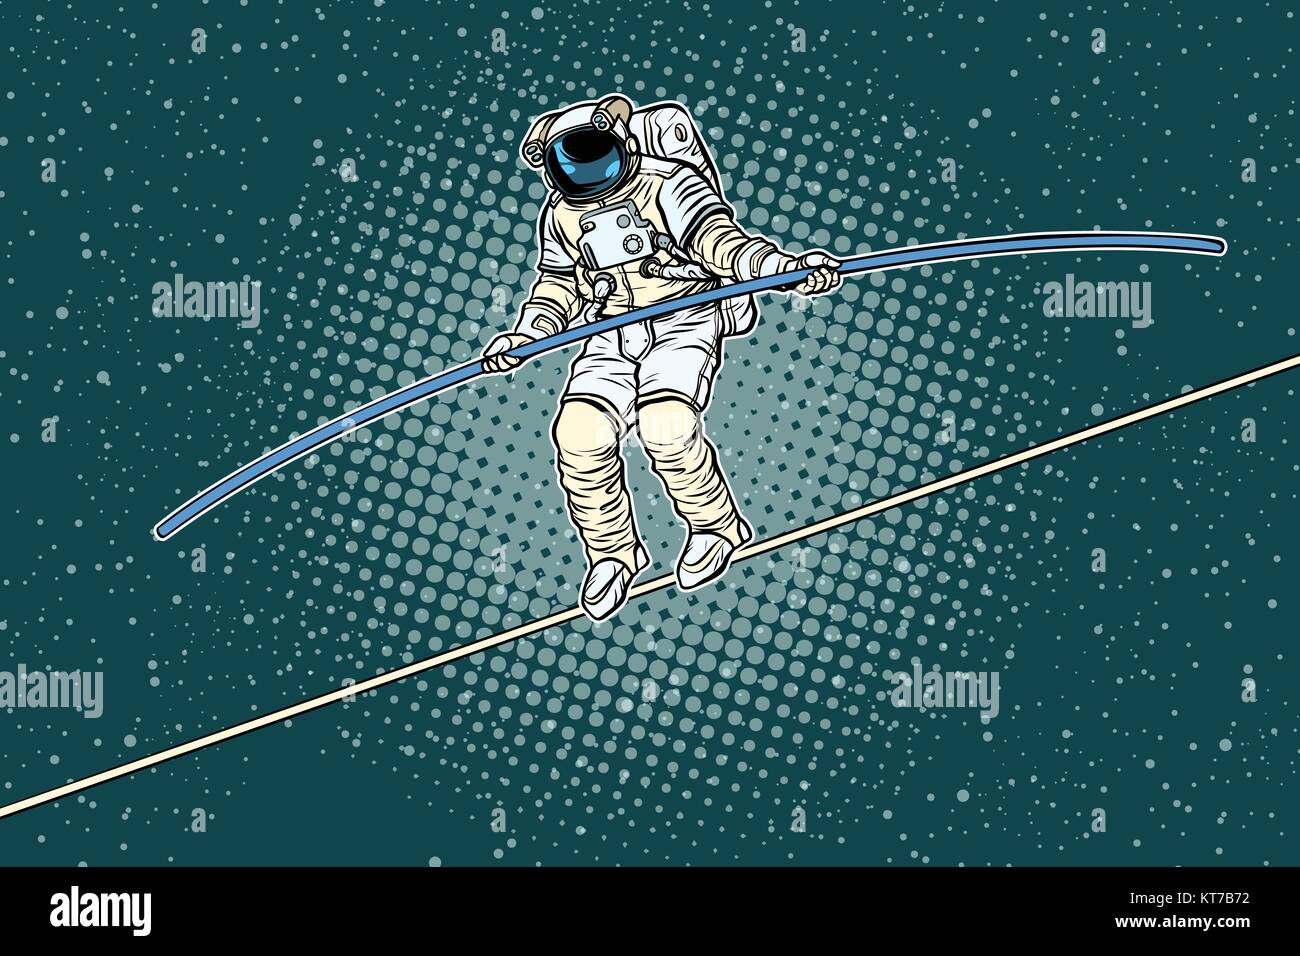 Funambule des astronautes, les risques d'un chercheur de la science Illustration de Vecteur